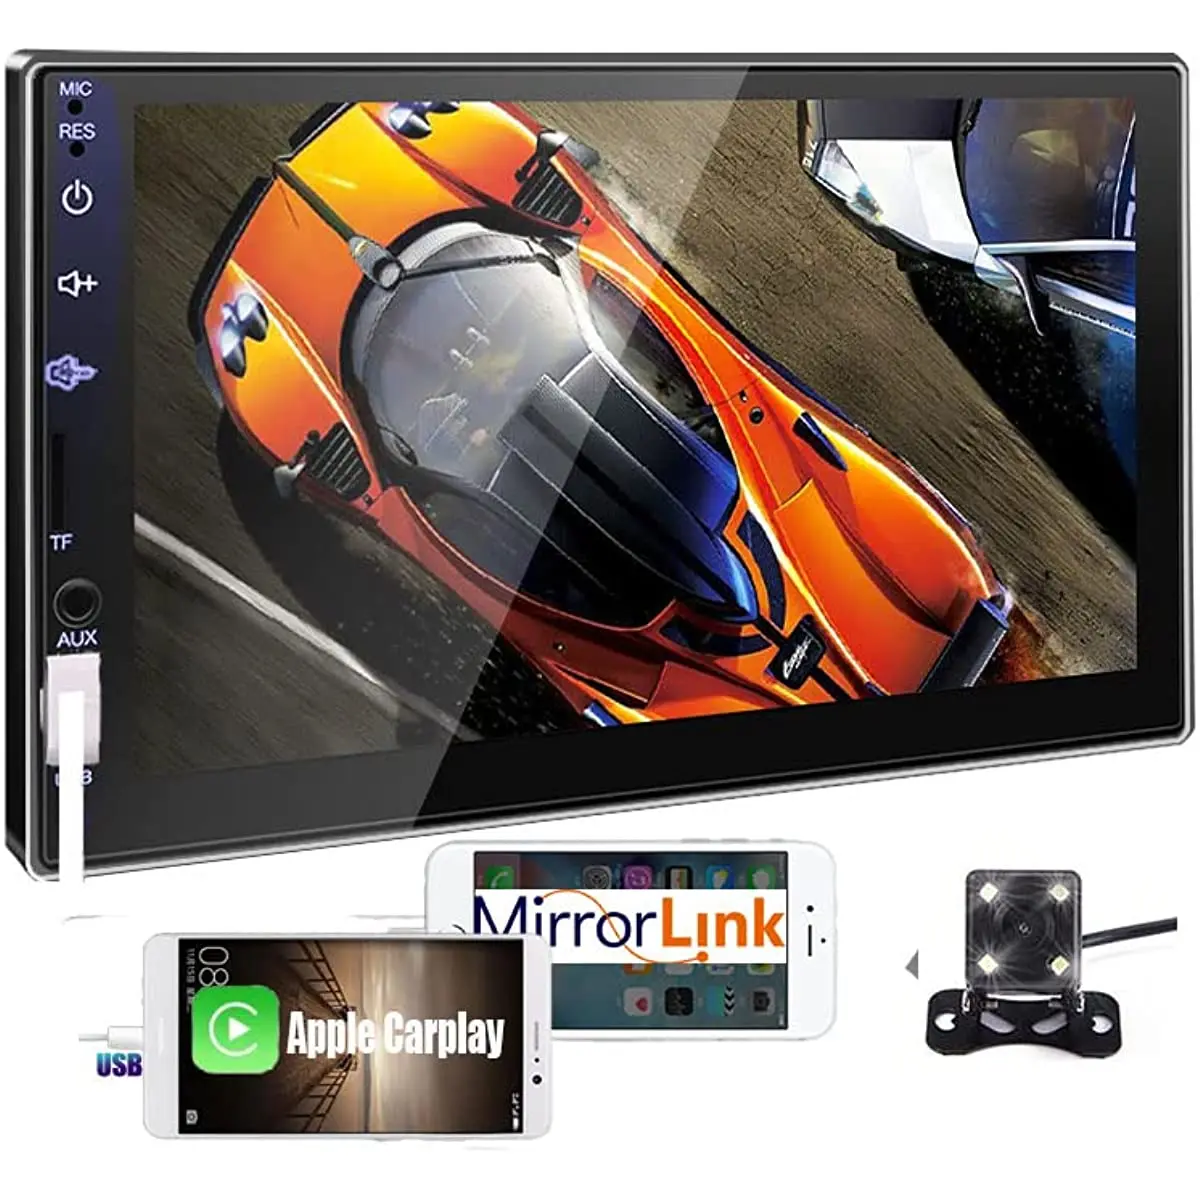 

Автомагнитола Apple Carplay, автомагнитола с камерой заднего вида, Bluetooth, 7-дюймовым сенсорным экраном, mp5-плеером, FM-радио, Mirror Link, типоразмер 2 Din